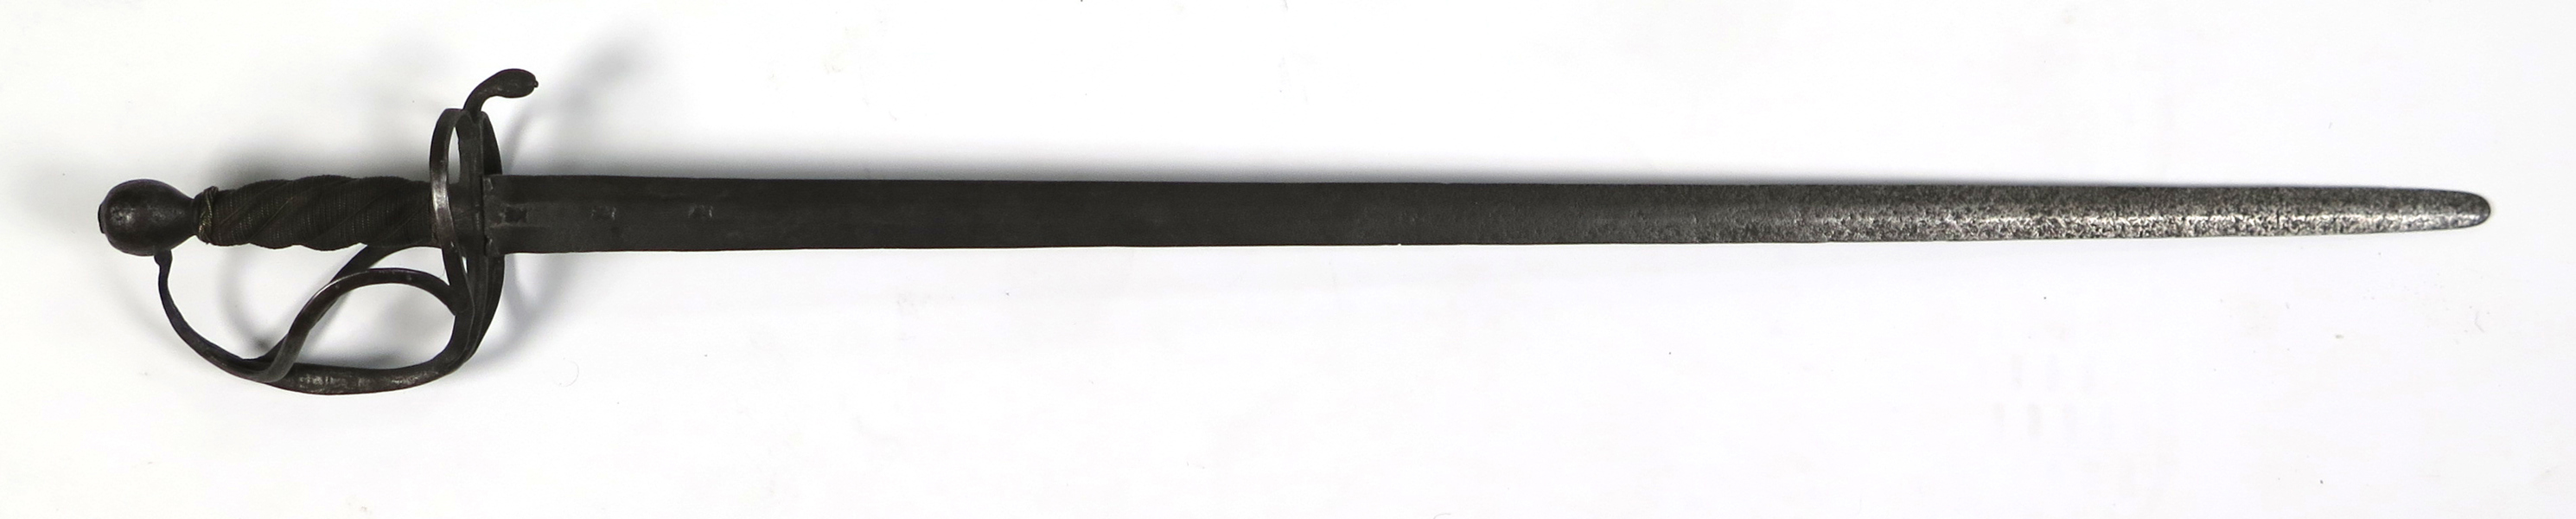 Värja, stål, modell liknande så kallat Soldatsvärd M/1653 men av samansatta delar, tveeggad klinga med stämplar från Wira Bruk, hjärtformade parerstänger med tumgrepp, stållindad kavel, _31718a_8dbb538137833b8_lg.jpeg